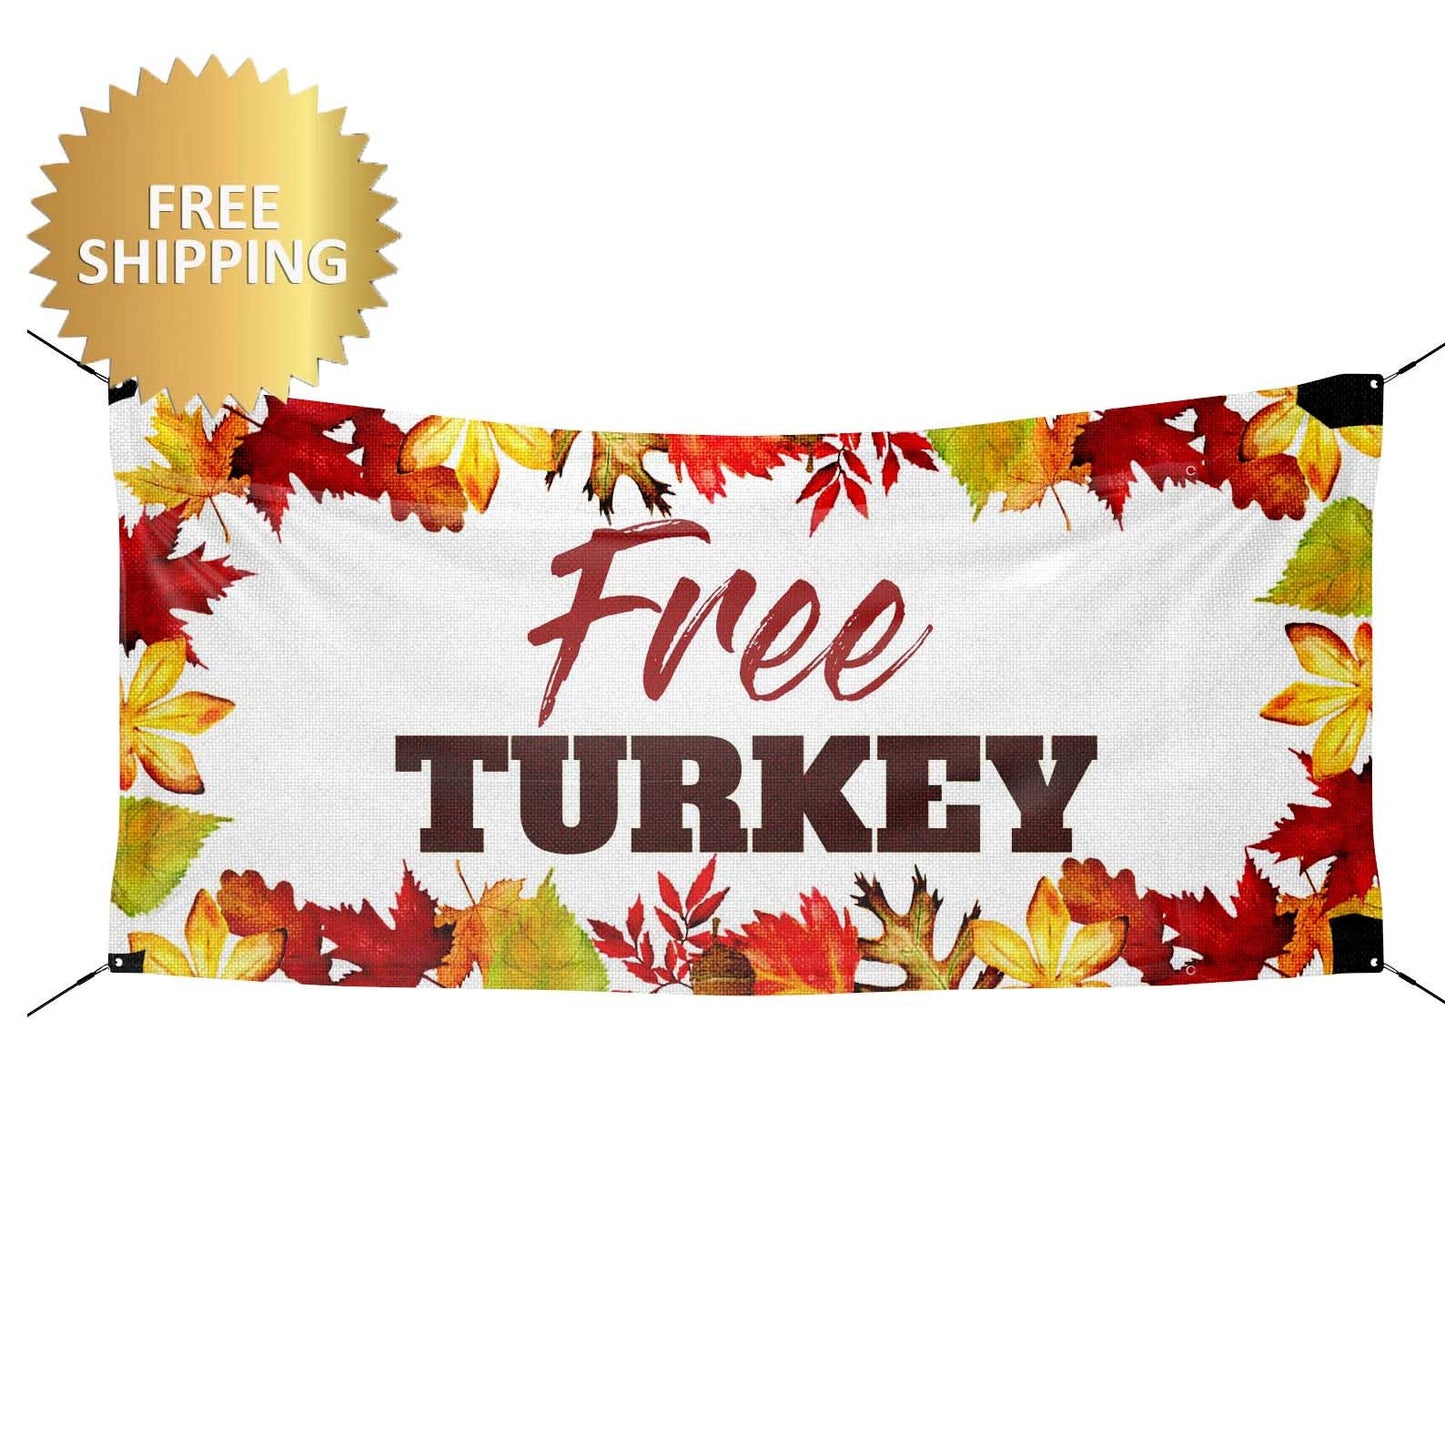 Free Turkey banner, Harvest Festival Banner, Free Turkey, Thanksgiving banner, Thanksgiving Backdrop, Custom Banner, Printed Custom Banner